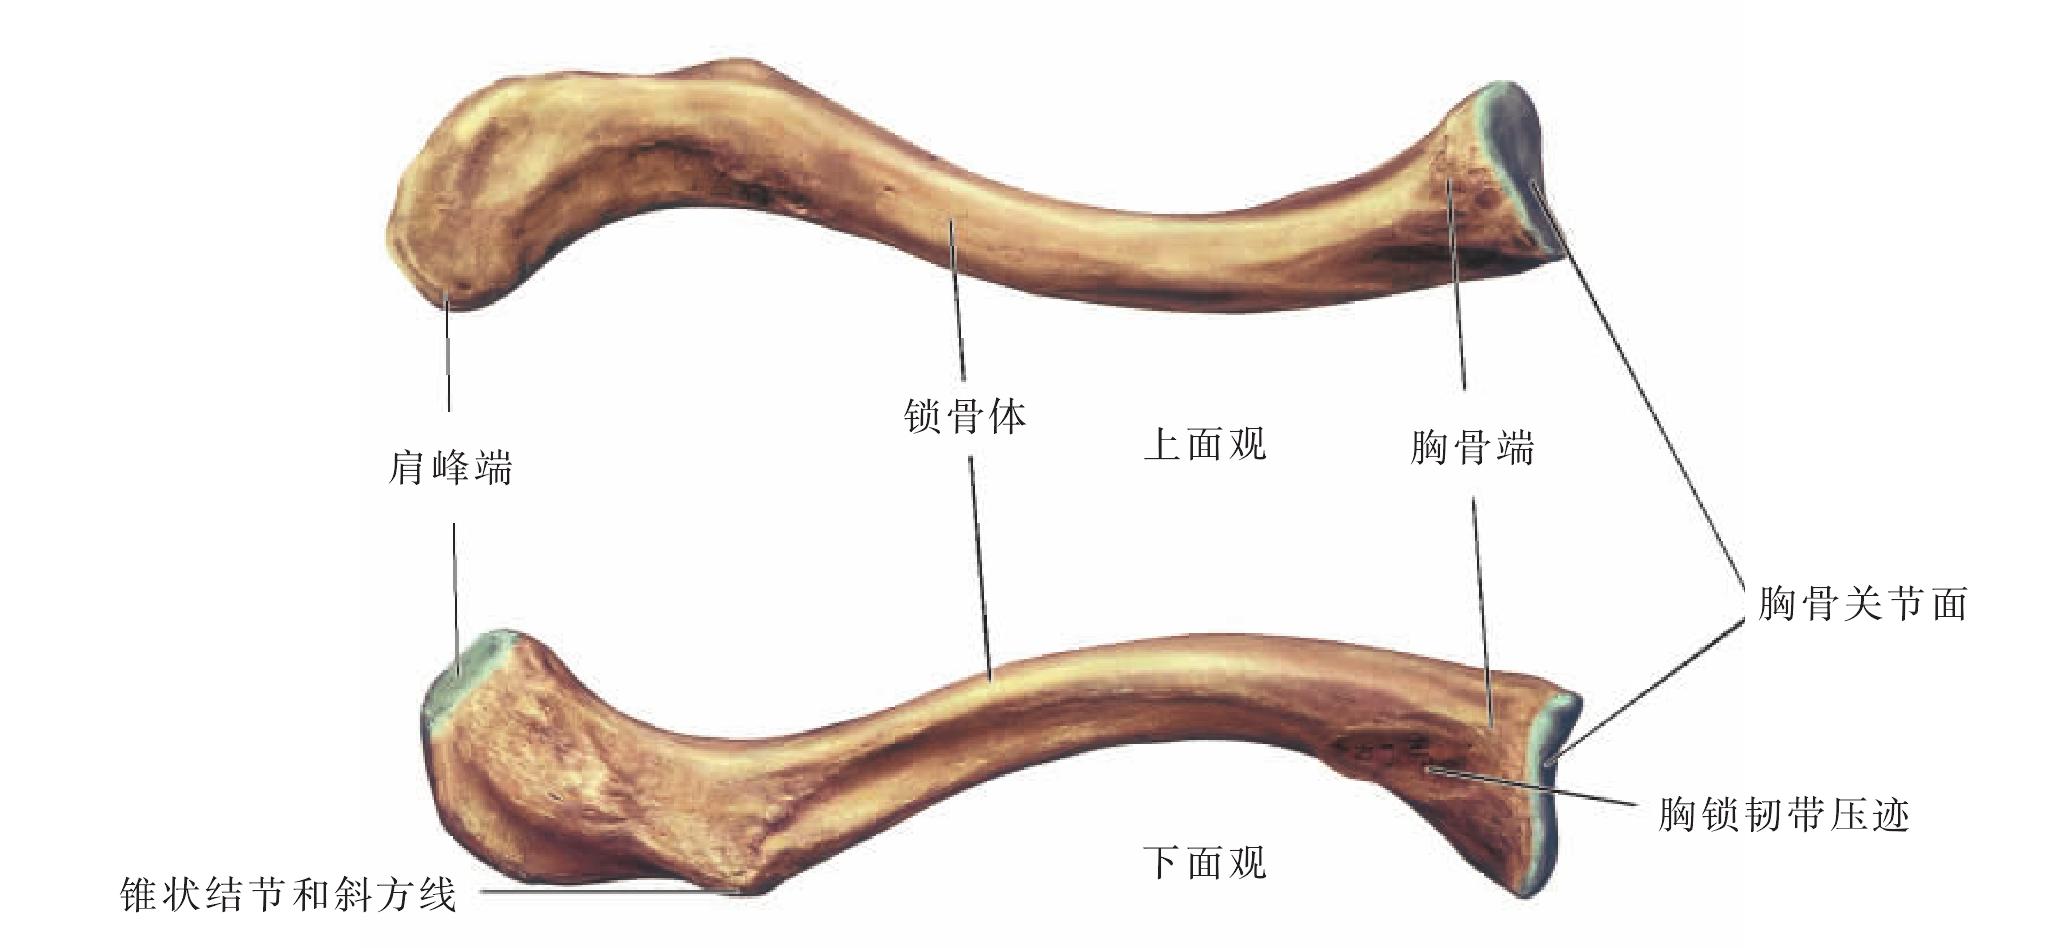 锁骨与肋骨的位置图